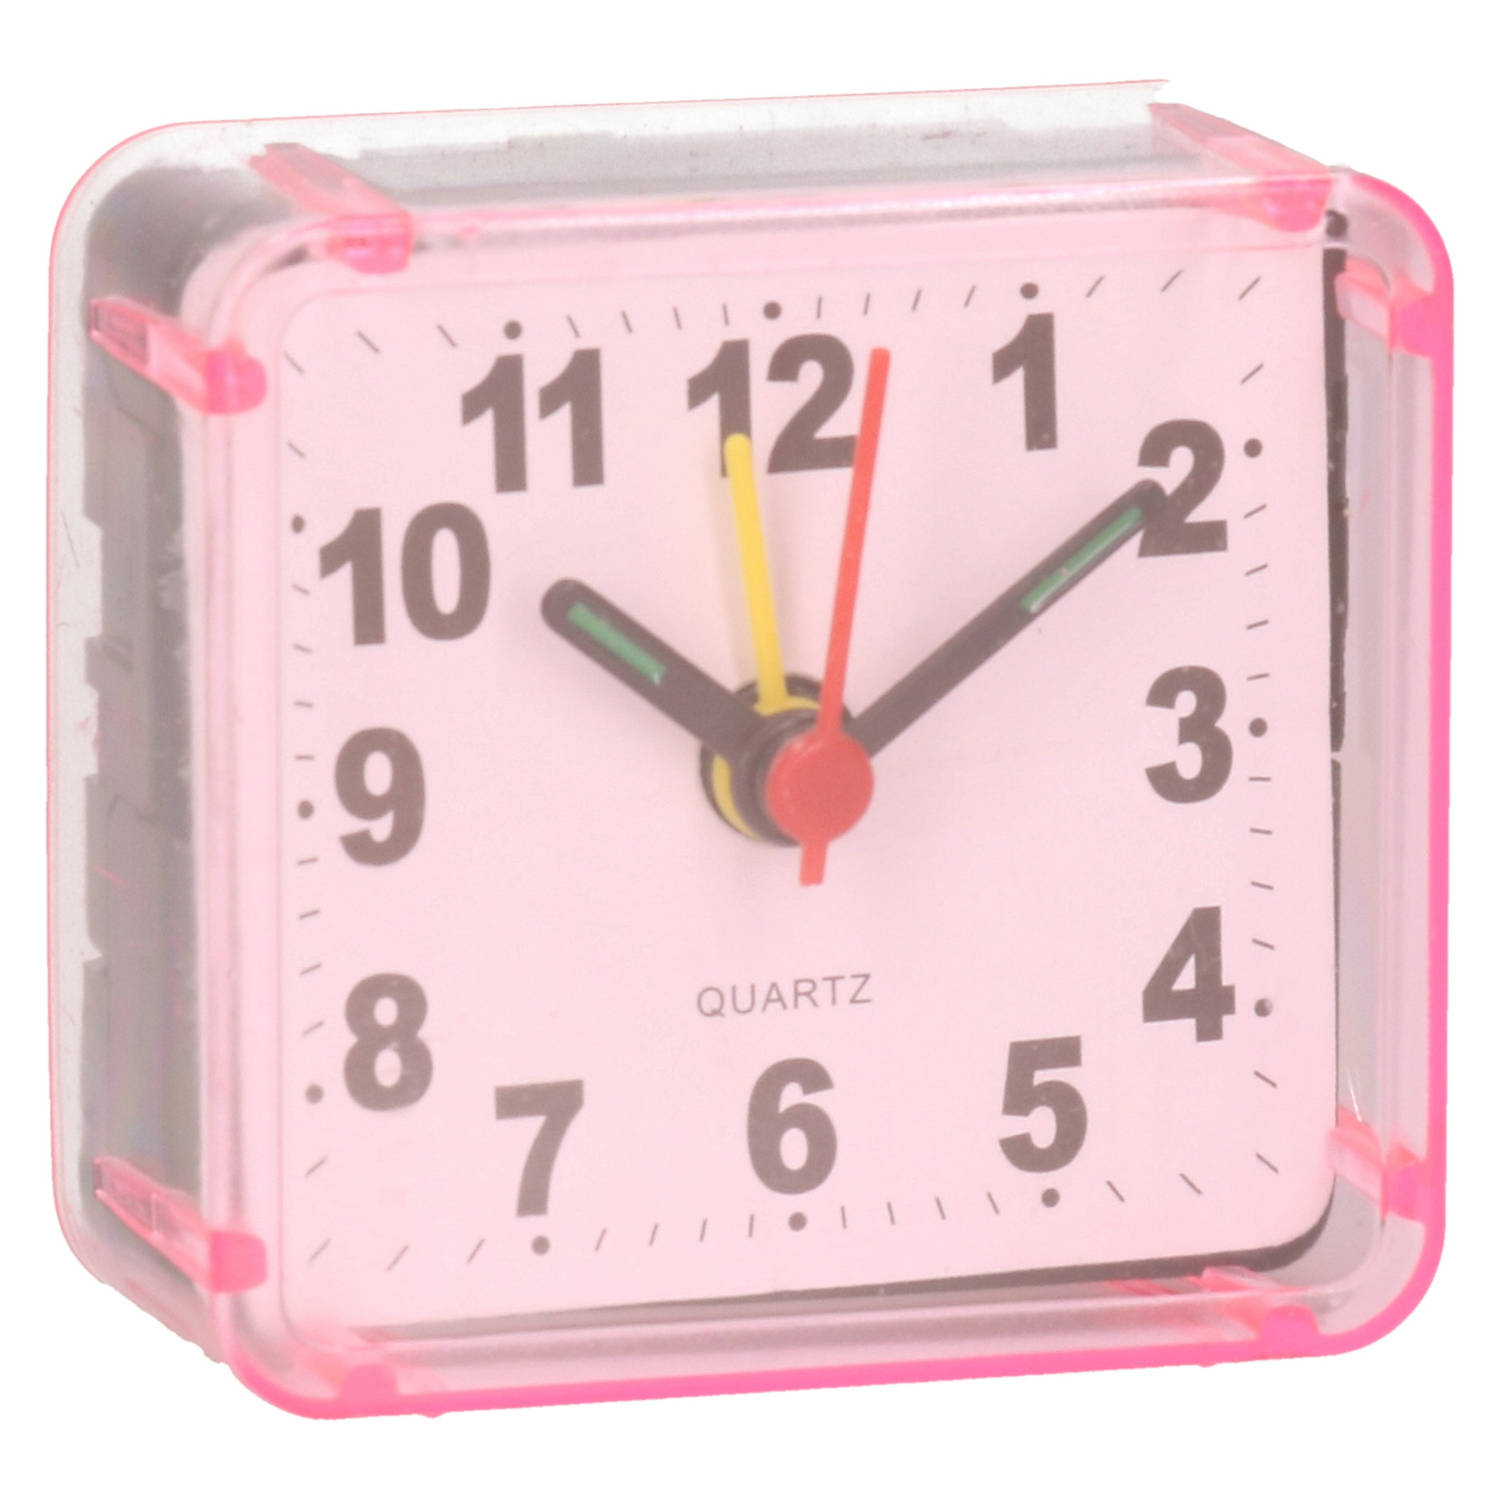 Gerimport Reiswekker-alarmklok analoog roze kunststof 6 x 3 cm klein model Wekkers